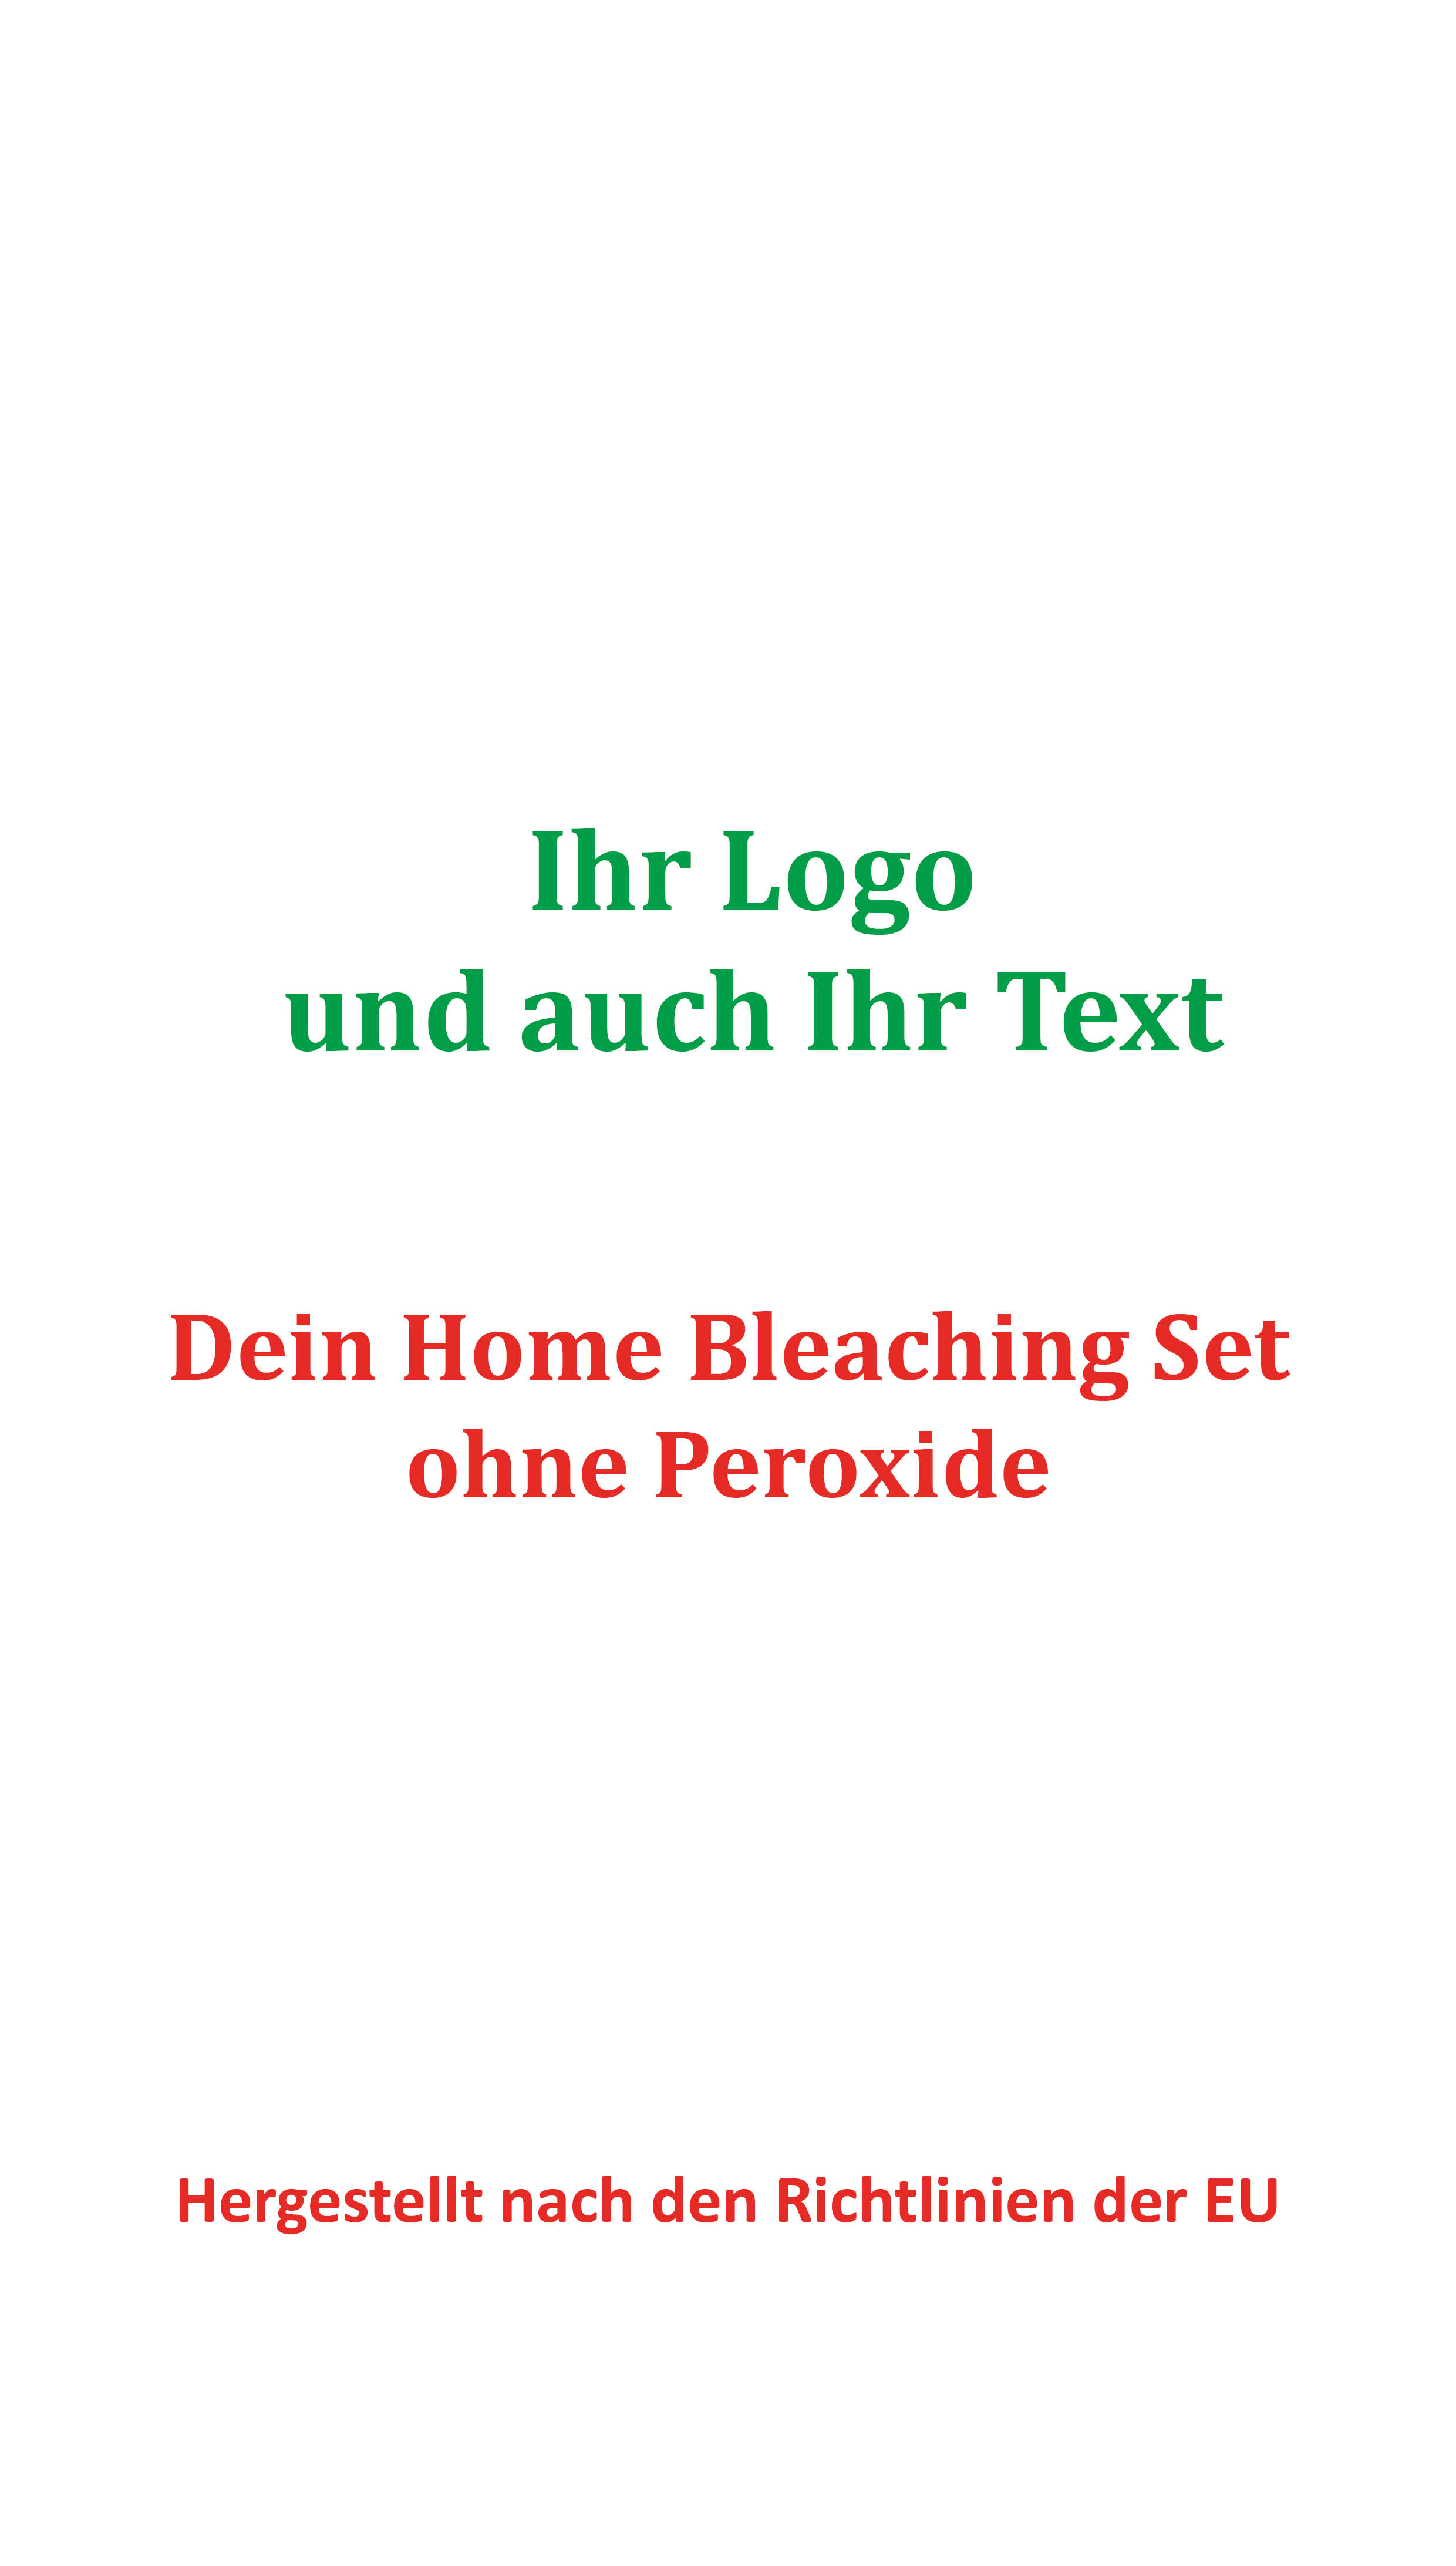 Home Bleaching Set mit Ihrem Logo